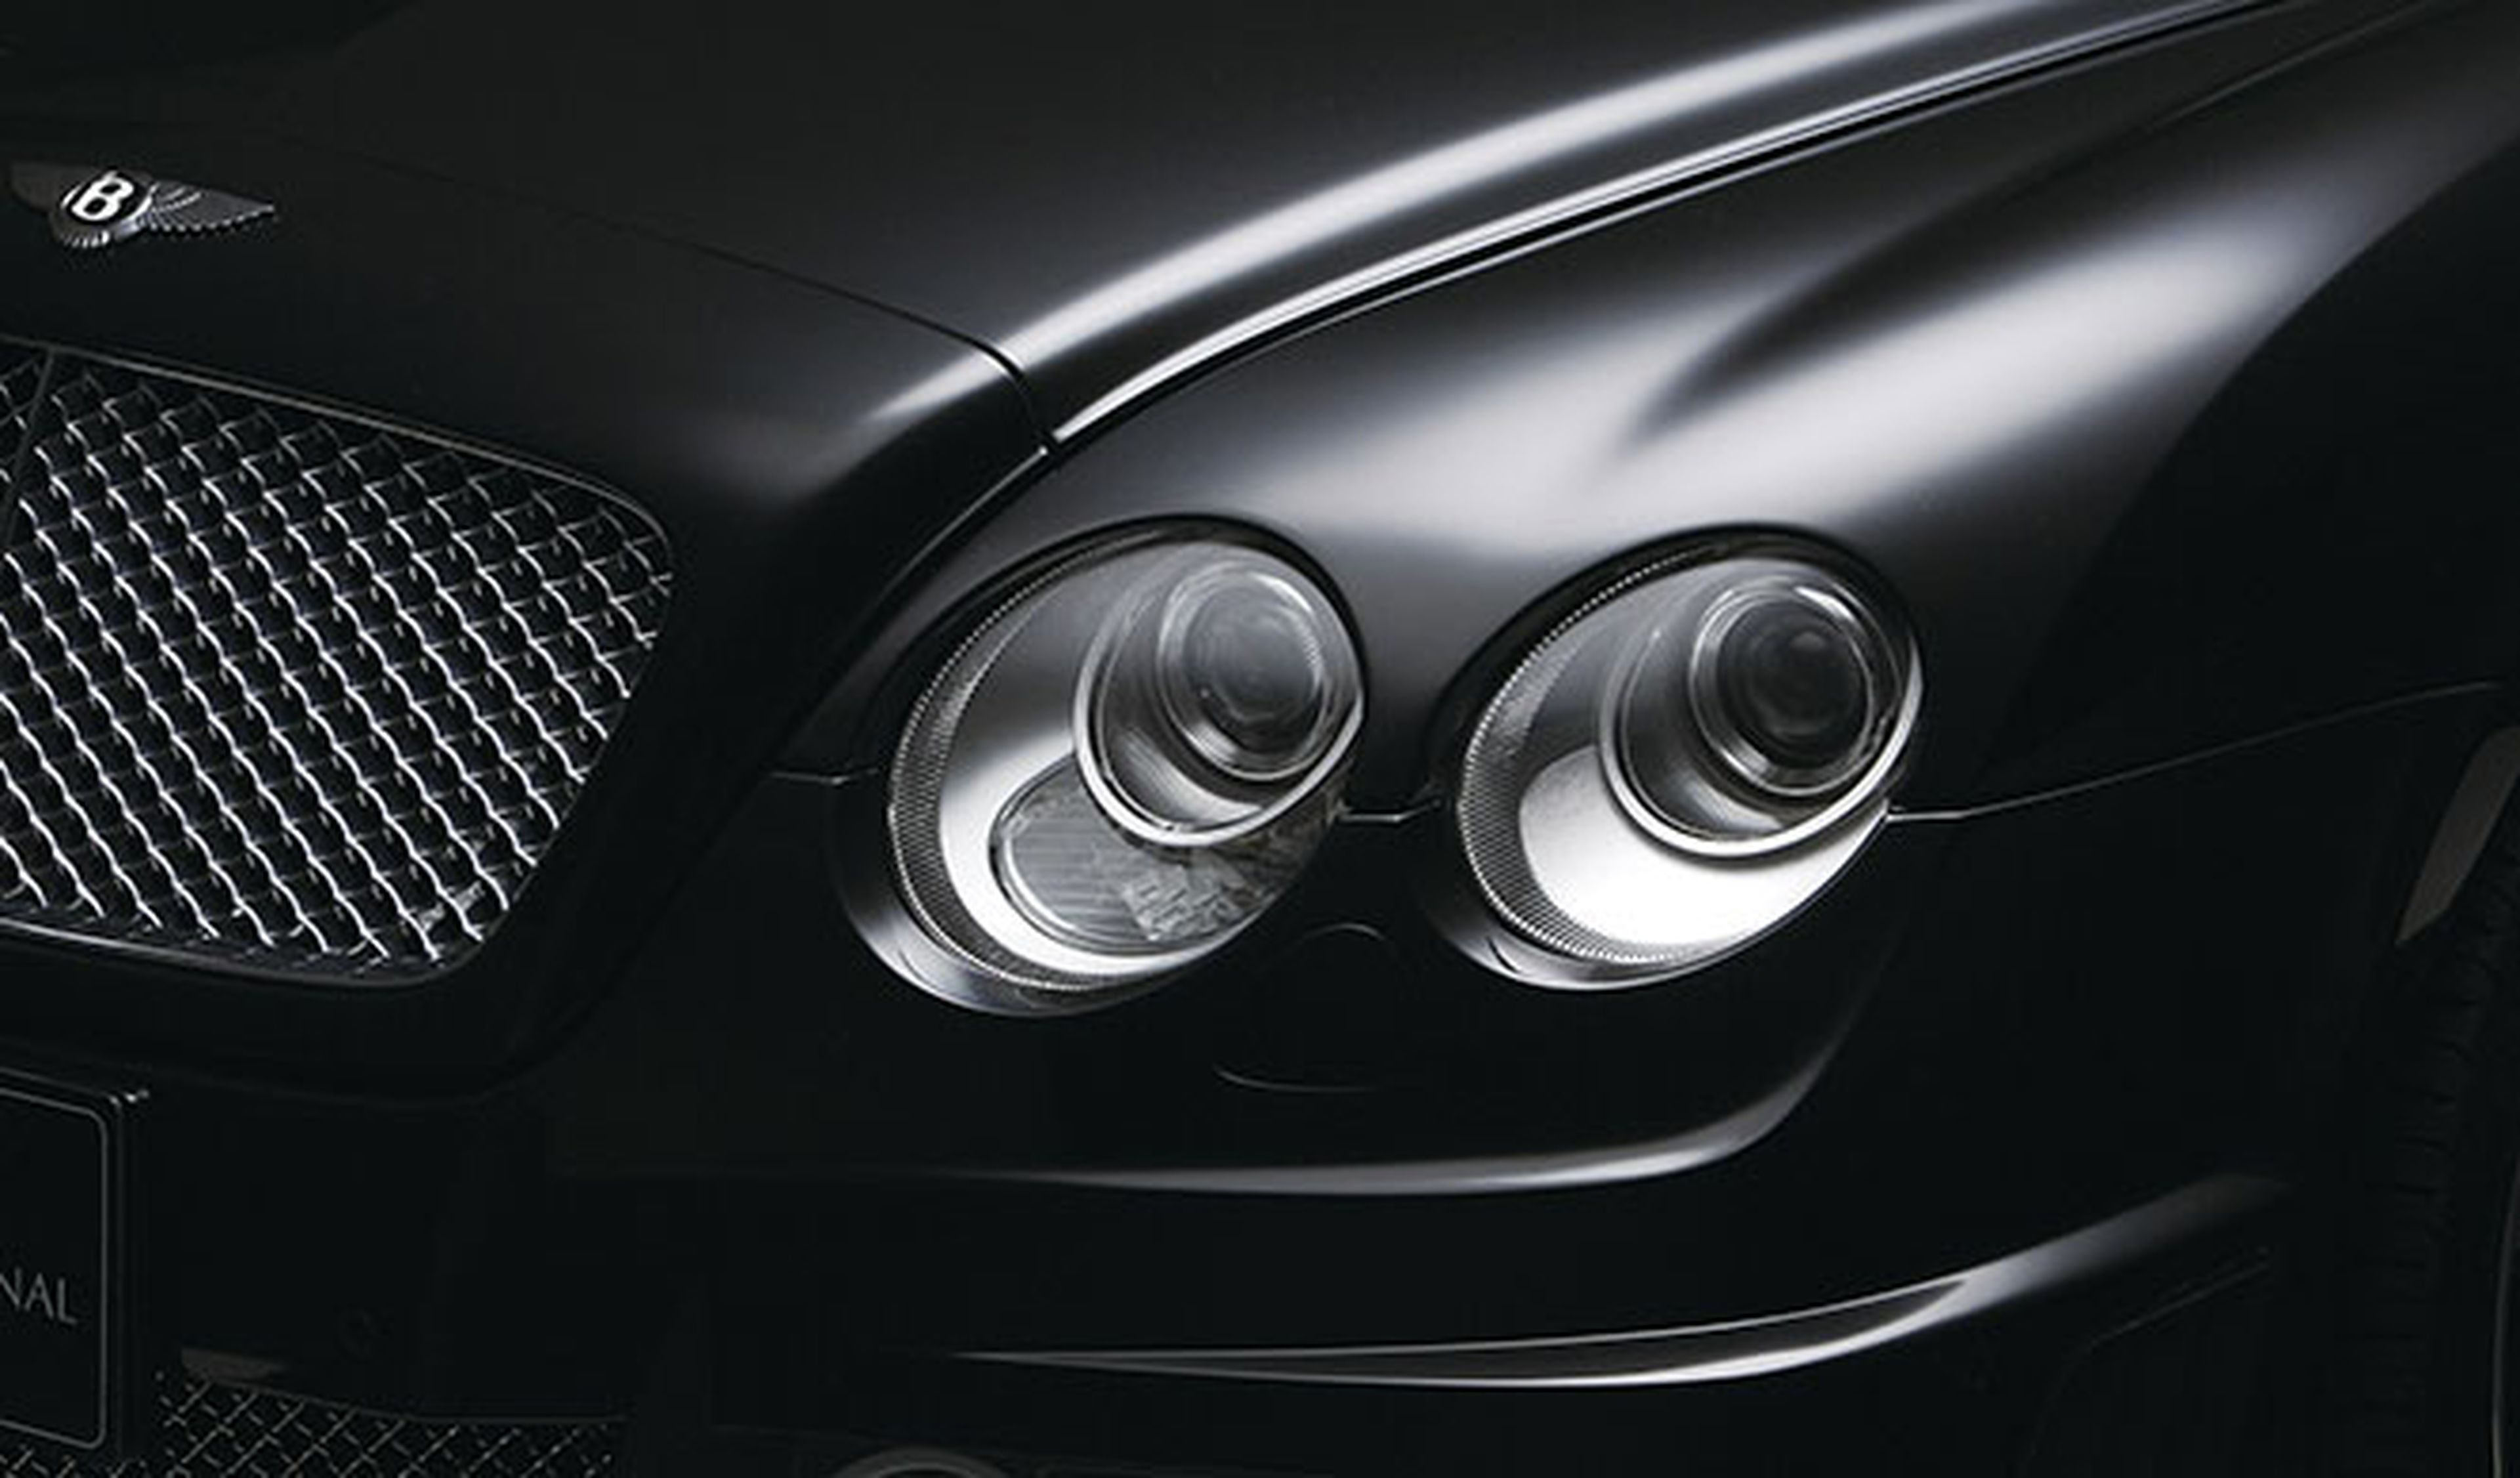 Bentley desvelará un concept deportivo en Ginebra